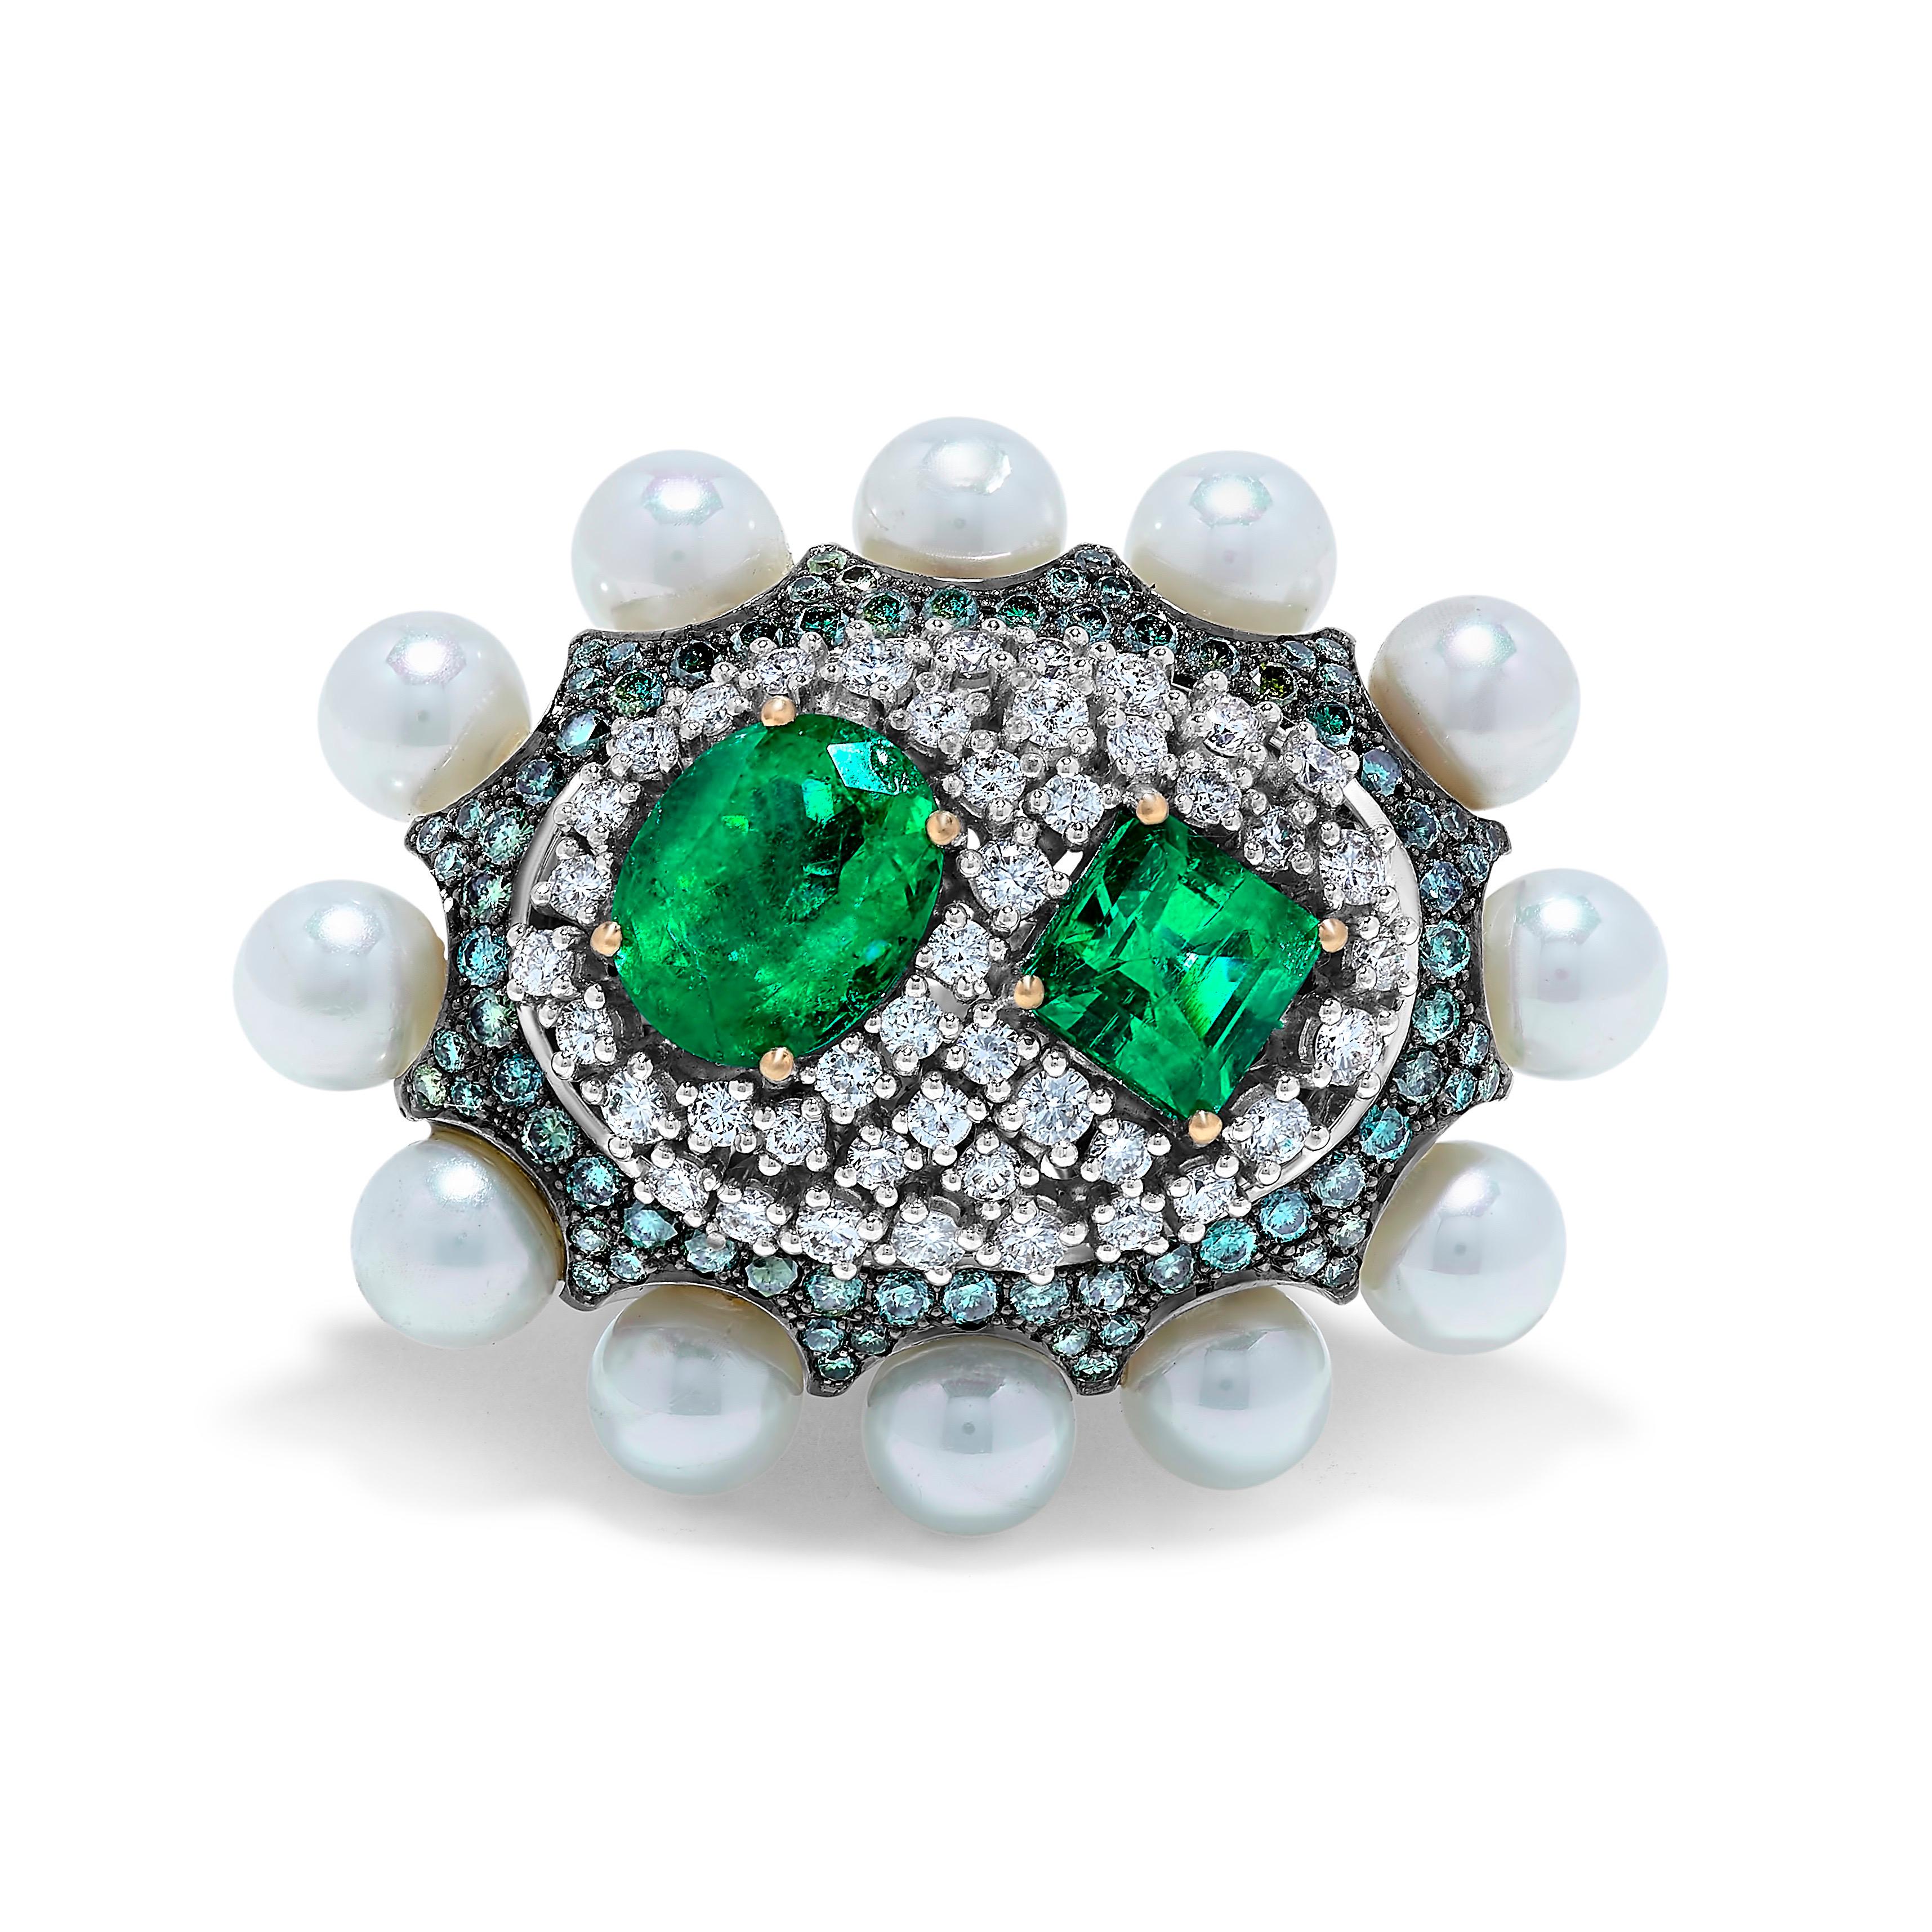 Erstellt von Emilio jewelry New York,
Wagen Sie es, anders zu sein - ein einzigartiger Ring mit den feinsten kolumbianischen Smaragden! 
2 Stück Smaragde: ca. 4,5 Karat
Weiße Diamanten 1,5 Karat 
Fancy Farbe Diamanten 1,5 cts 
